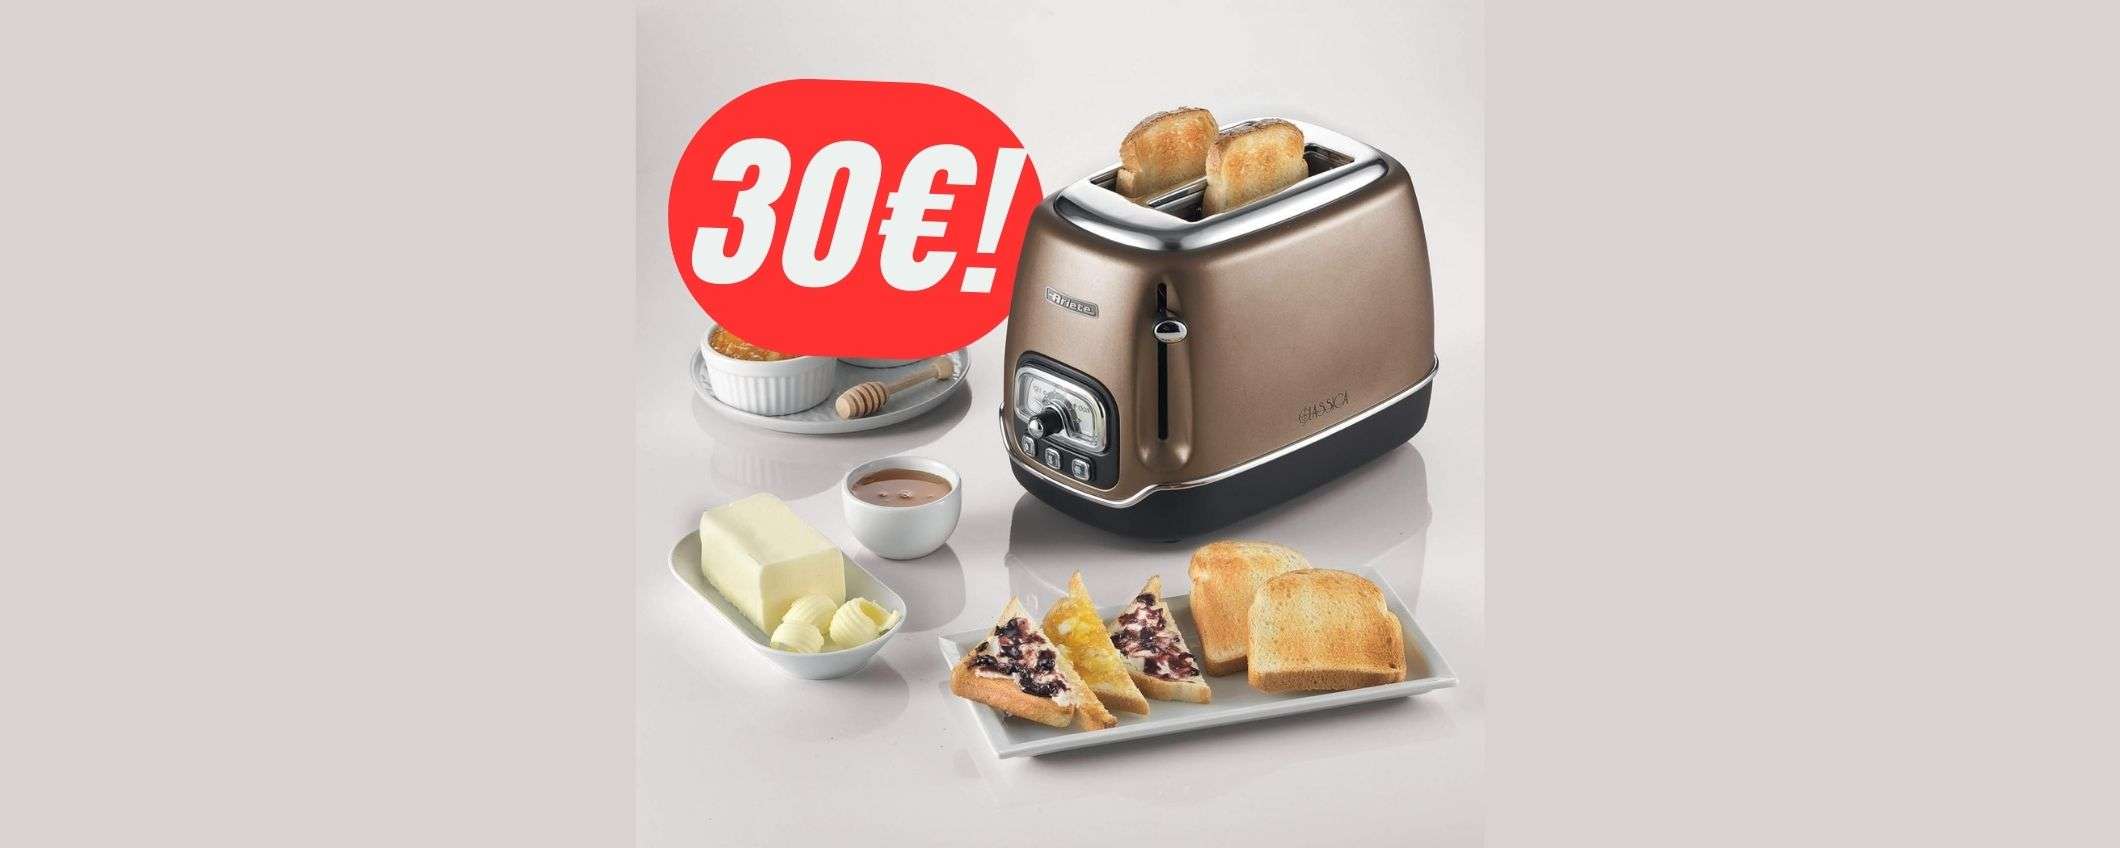 Prepara fette di pane perfette grazie al TOSTAPANE Ariete (a solo 30€!)